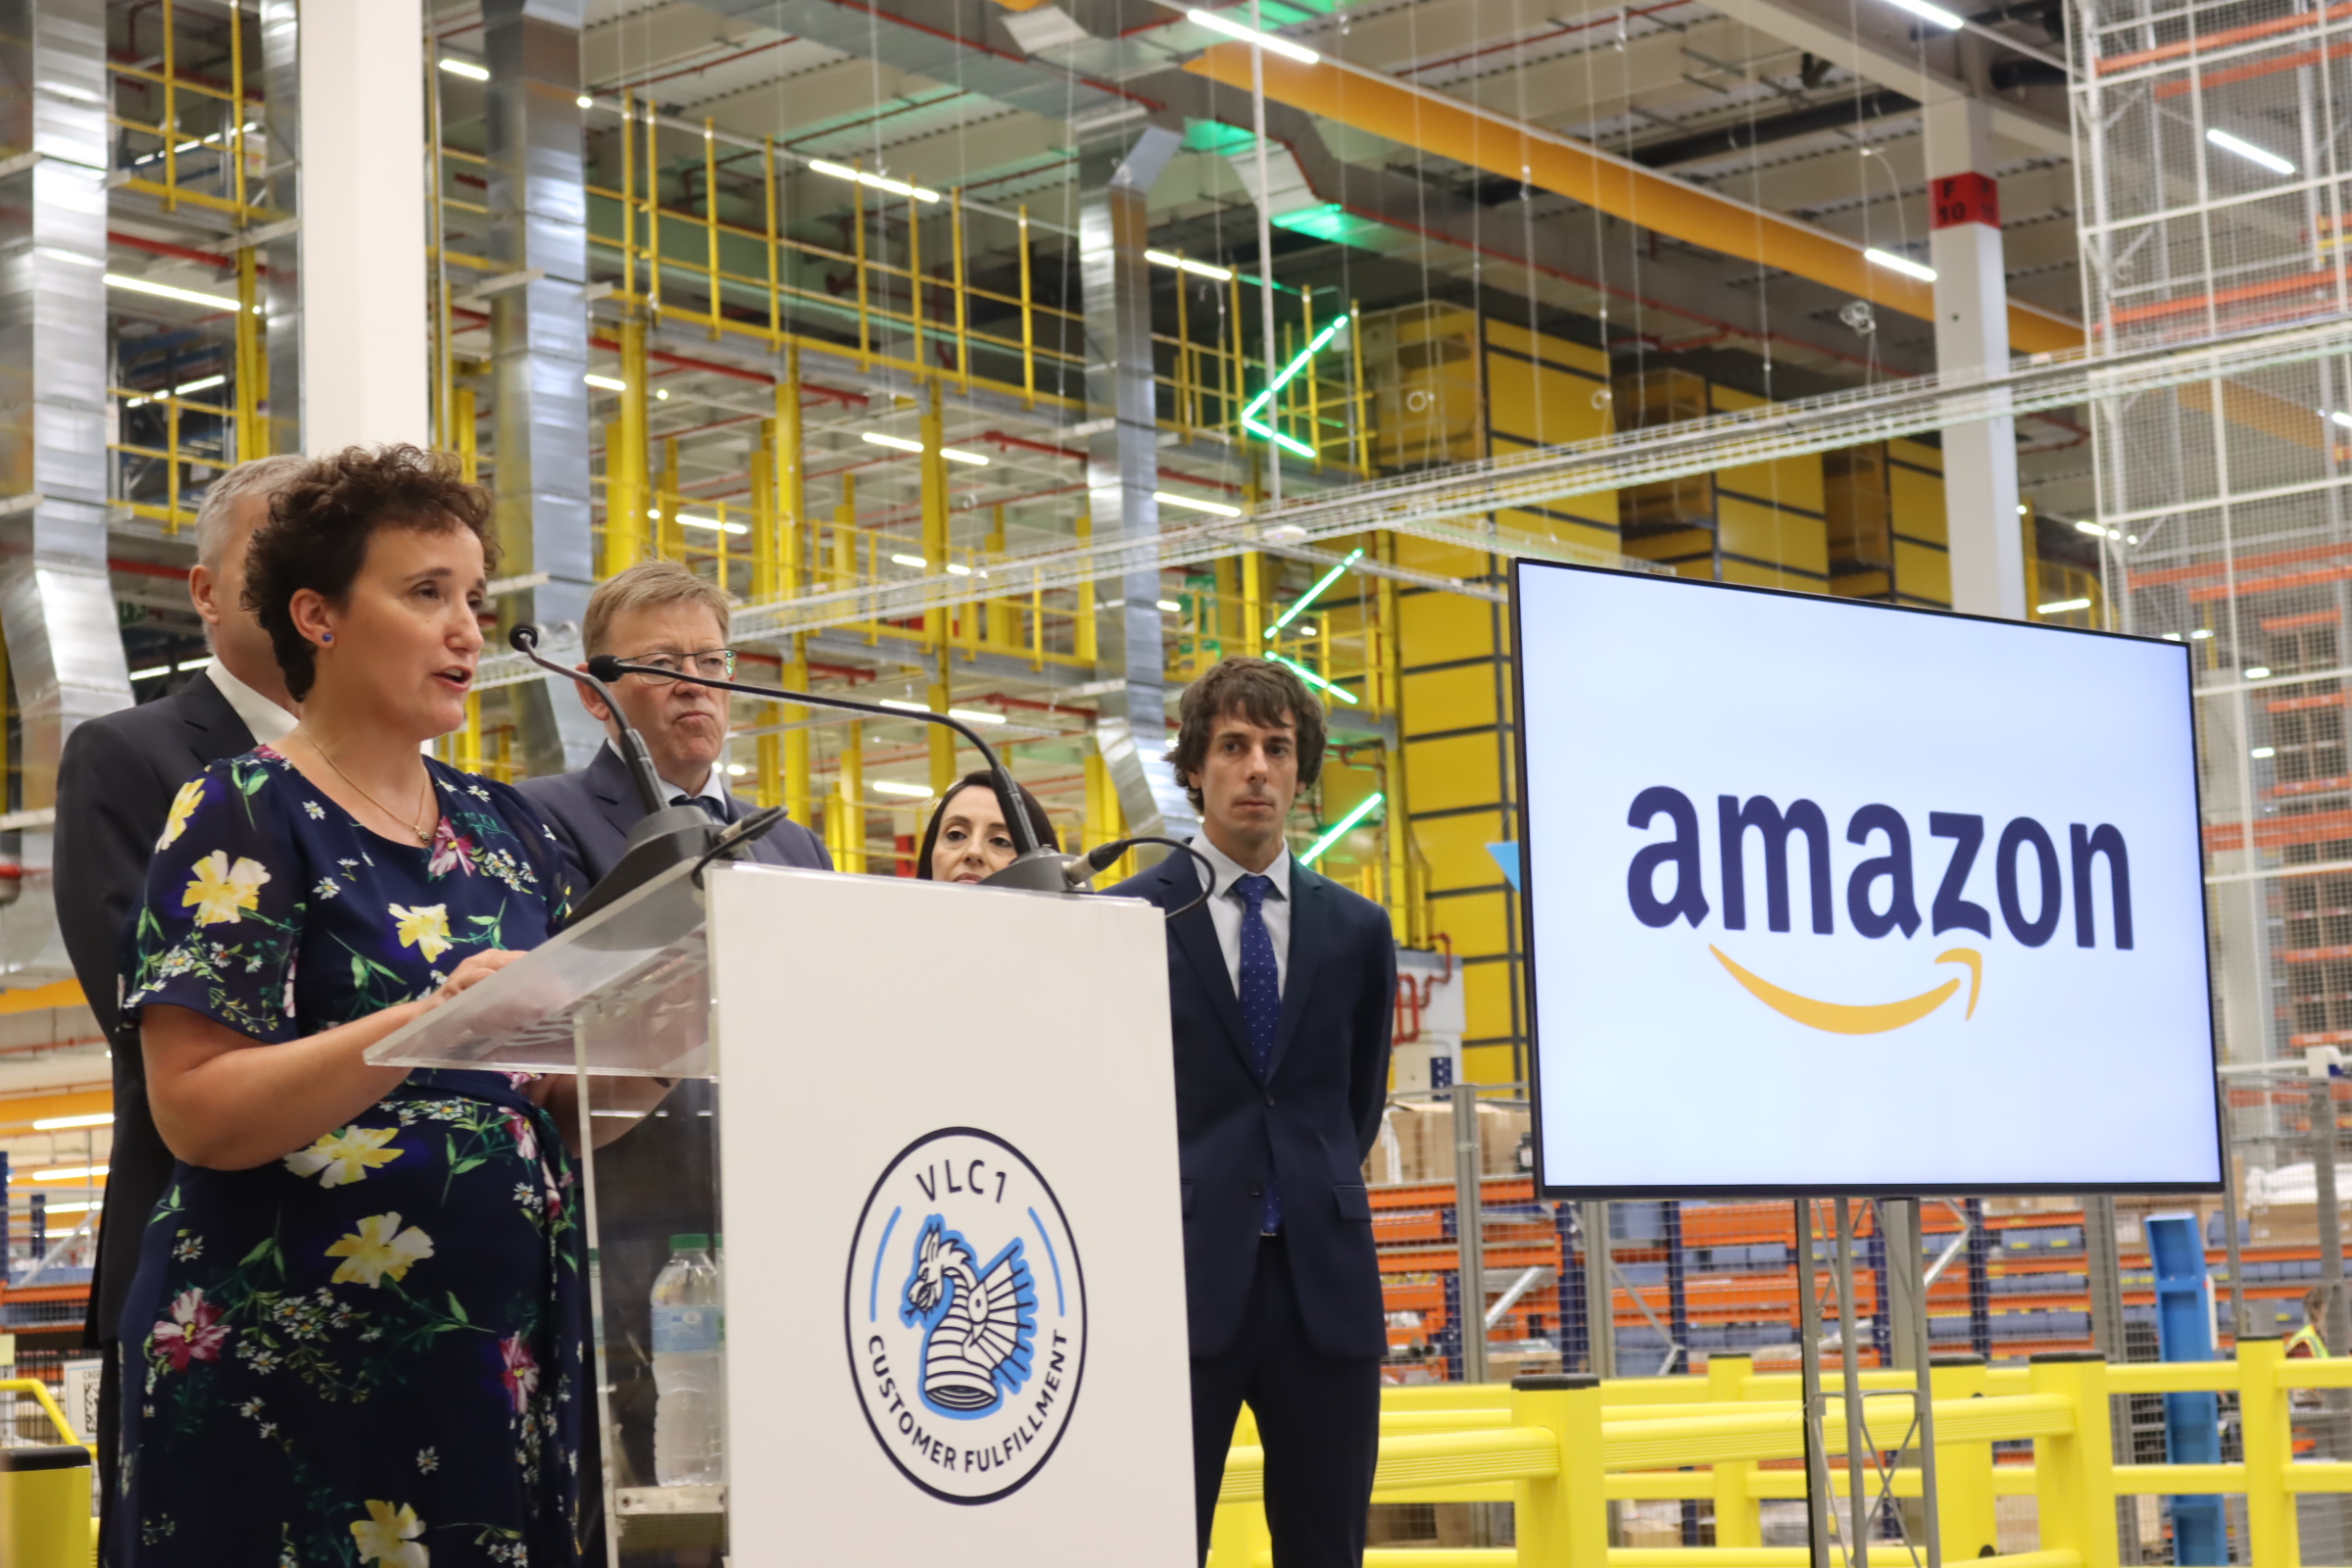 Ballester: “La llegada de Amazon responde a la política útil que escucha a nuestras empresas y ofrece soluciones”